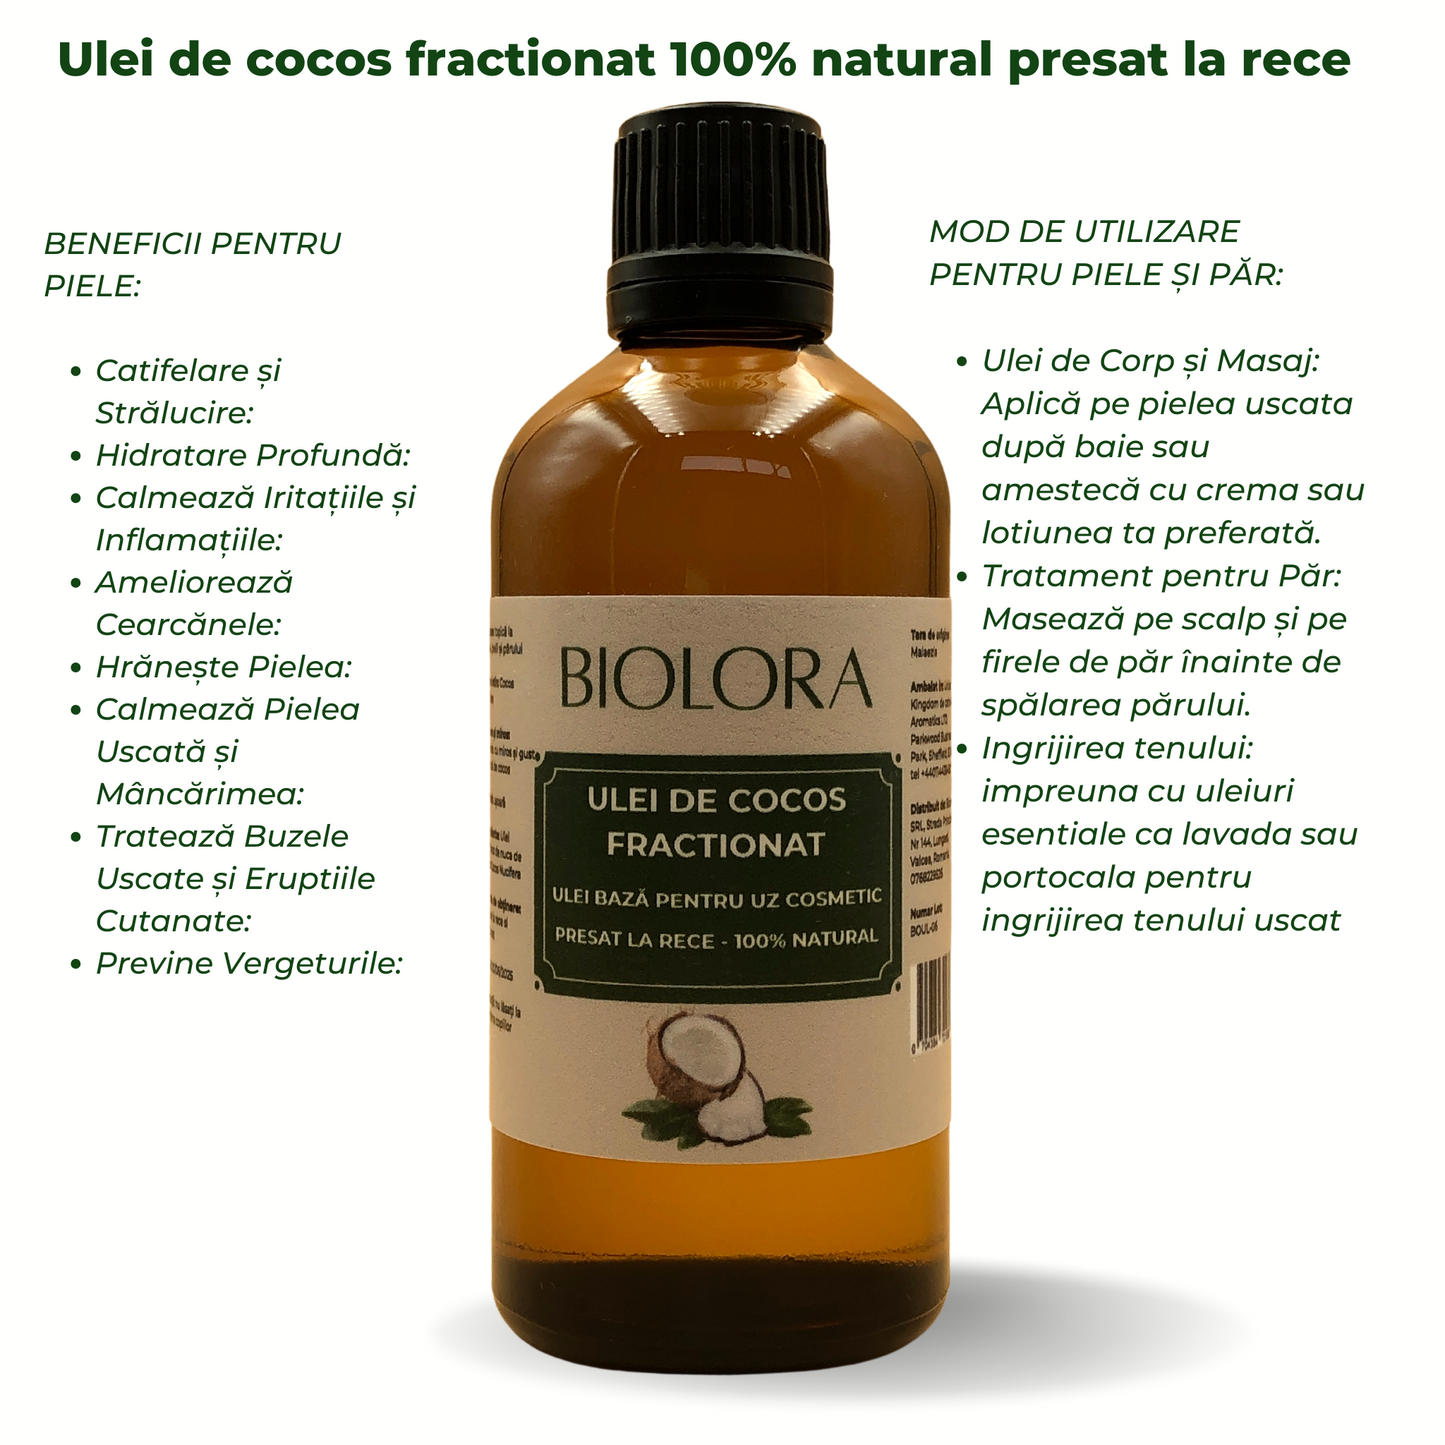 Ulei de Cocos Fractionat, 100% natural, uz cosmetic, pentru ingrijirea pielii si a parului, 100 ml